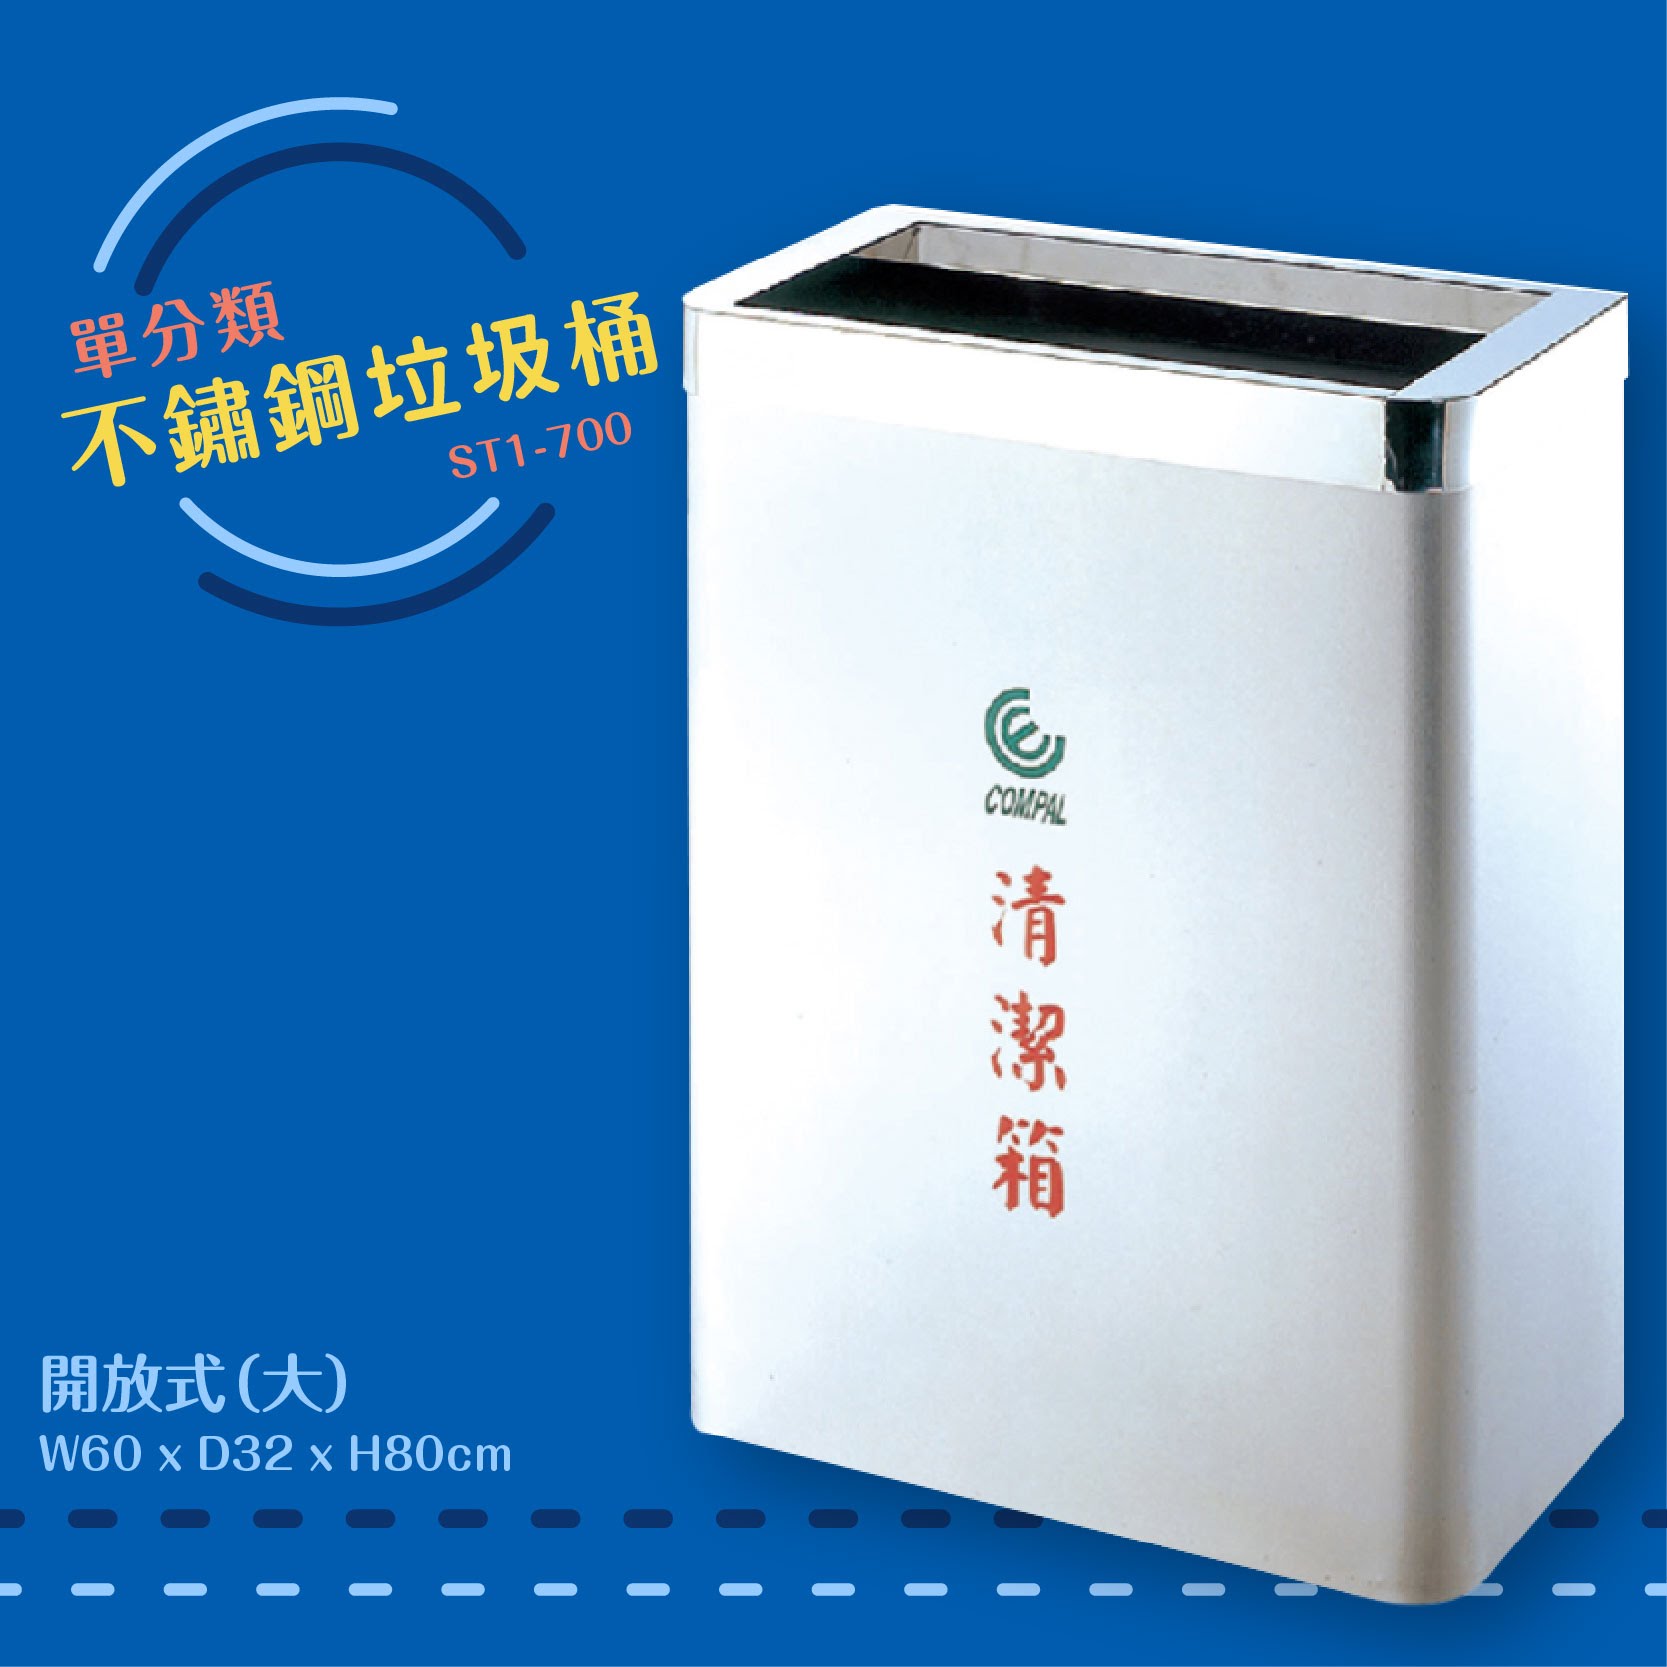 公共清潔➤ST1-700 不鏽鋼清潔箱-大(開放式) 垃圾桶 垃圾筒 分類桶 回收箱 資源回收桶 百貨社區飯店